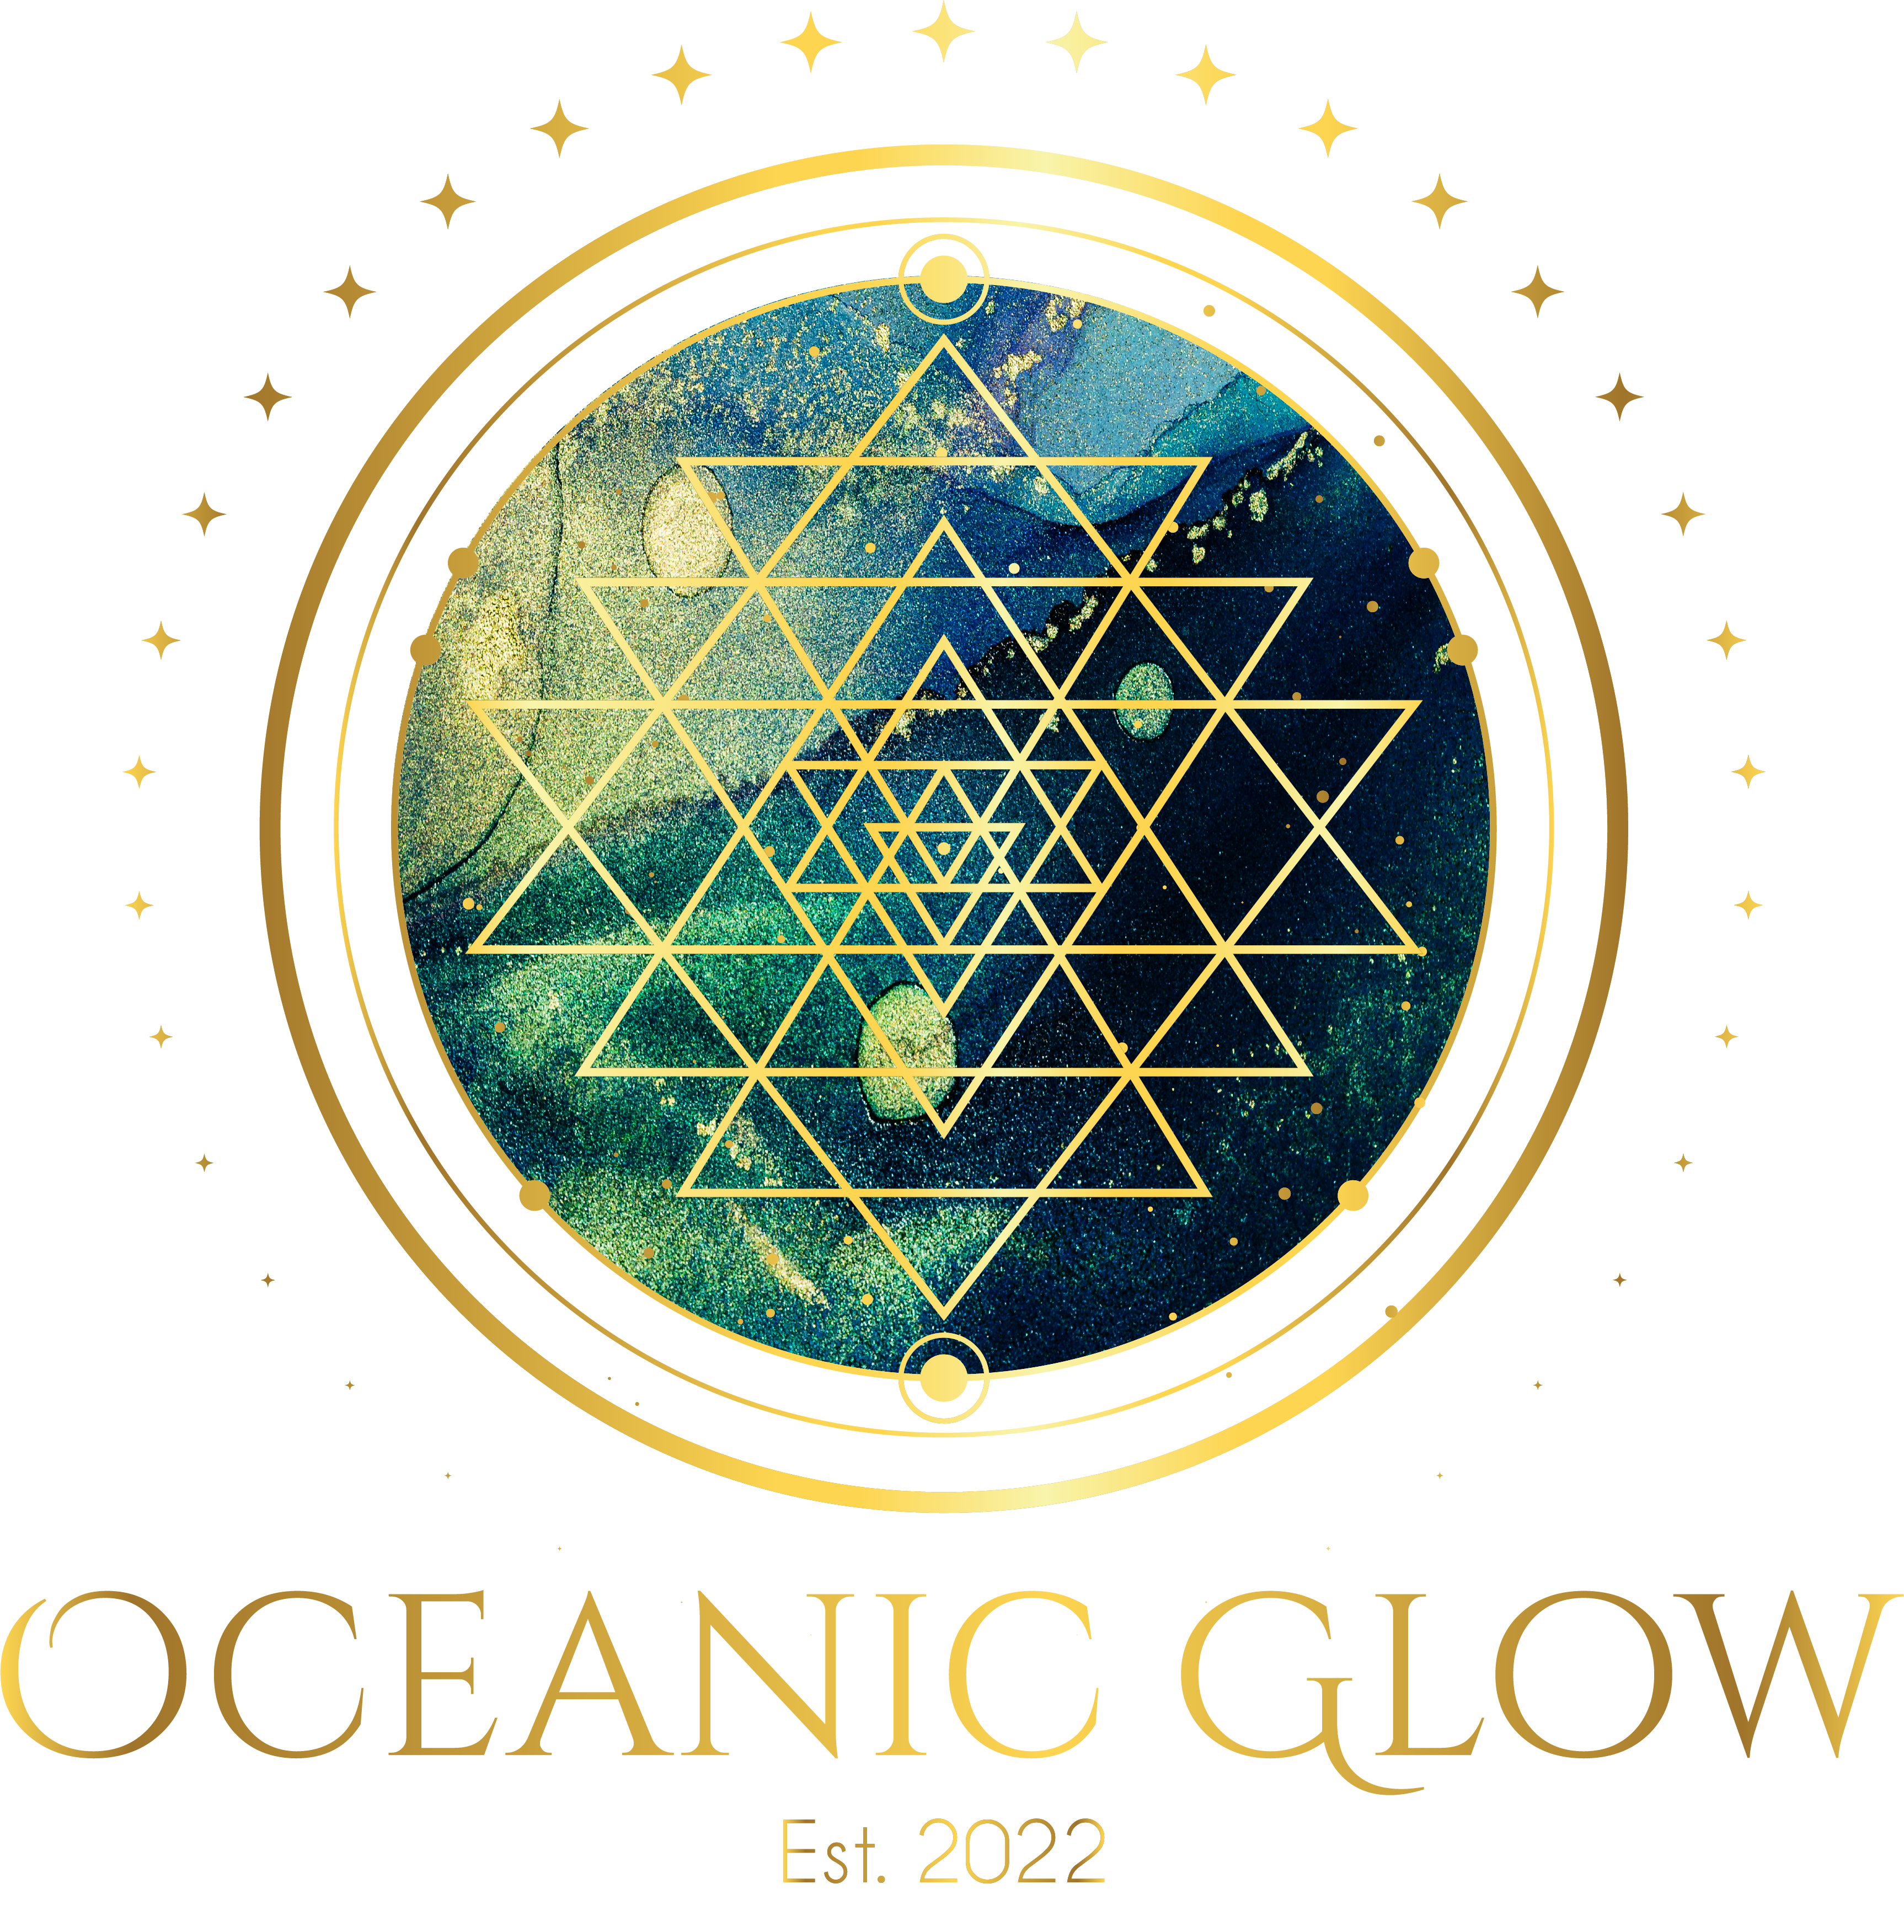 Oceanic Glow